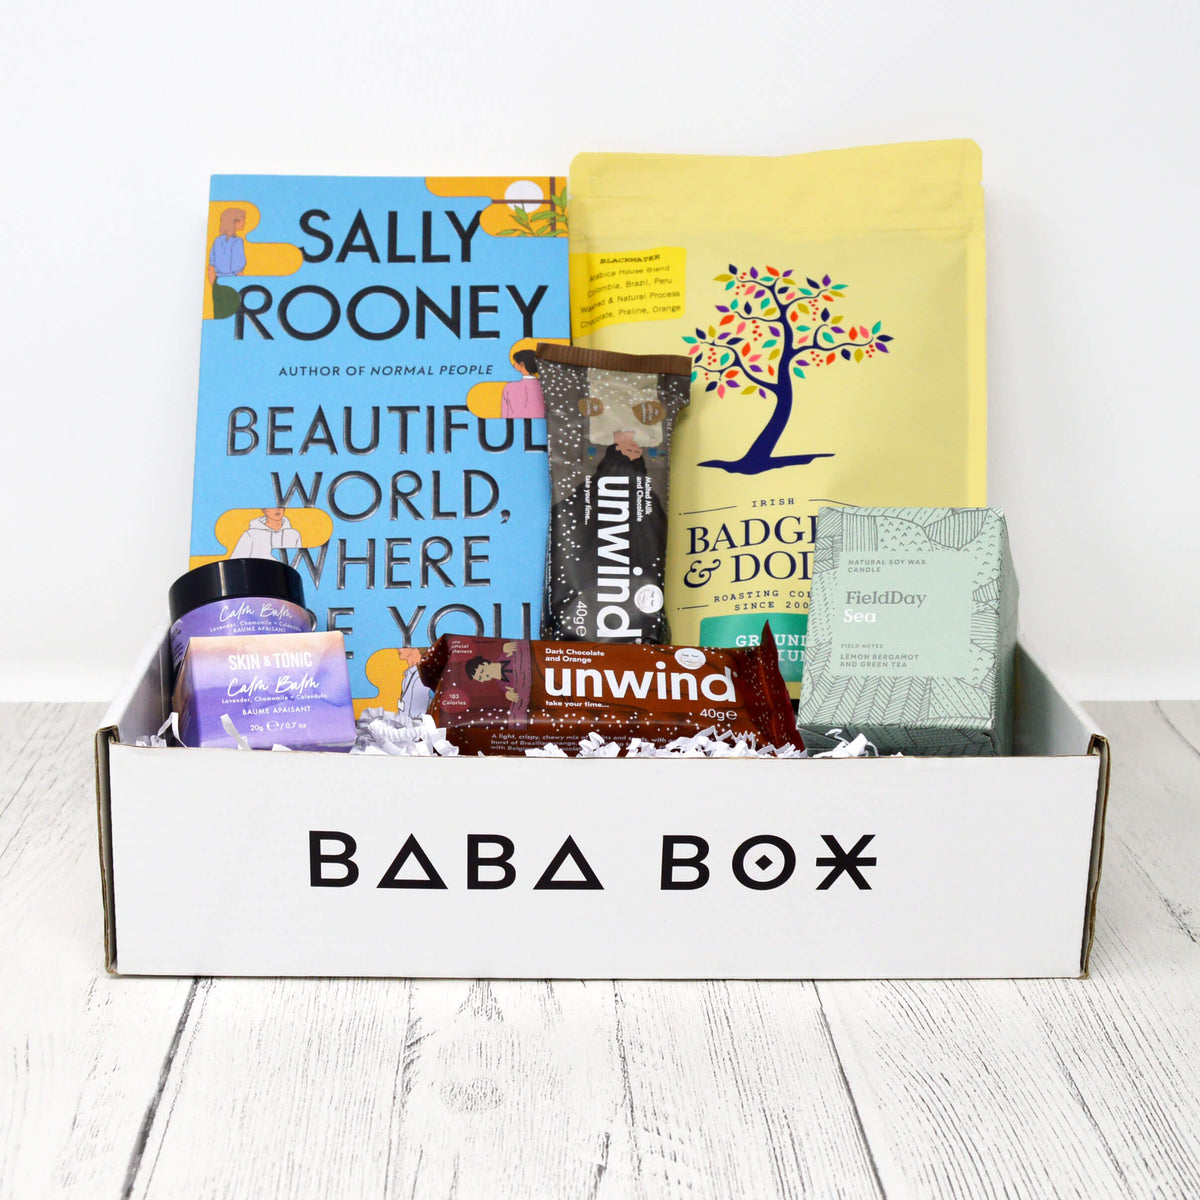 New Mum Unwind Gift Box - Baba Box - Sally Rooney